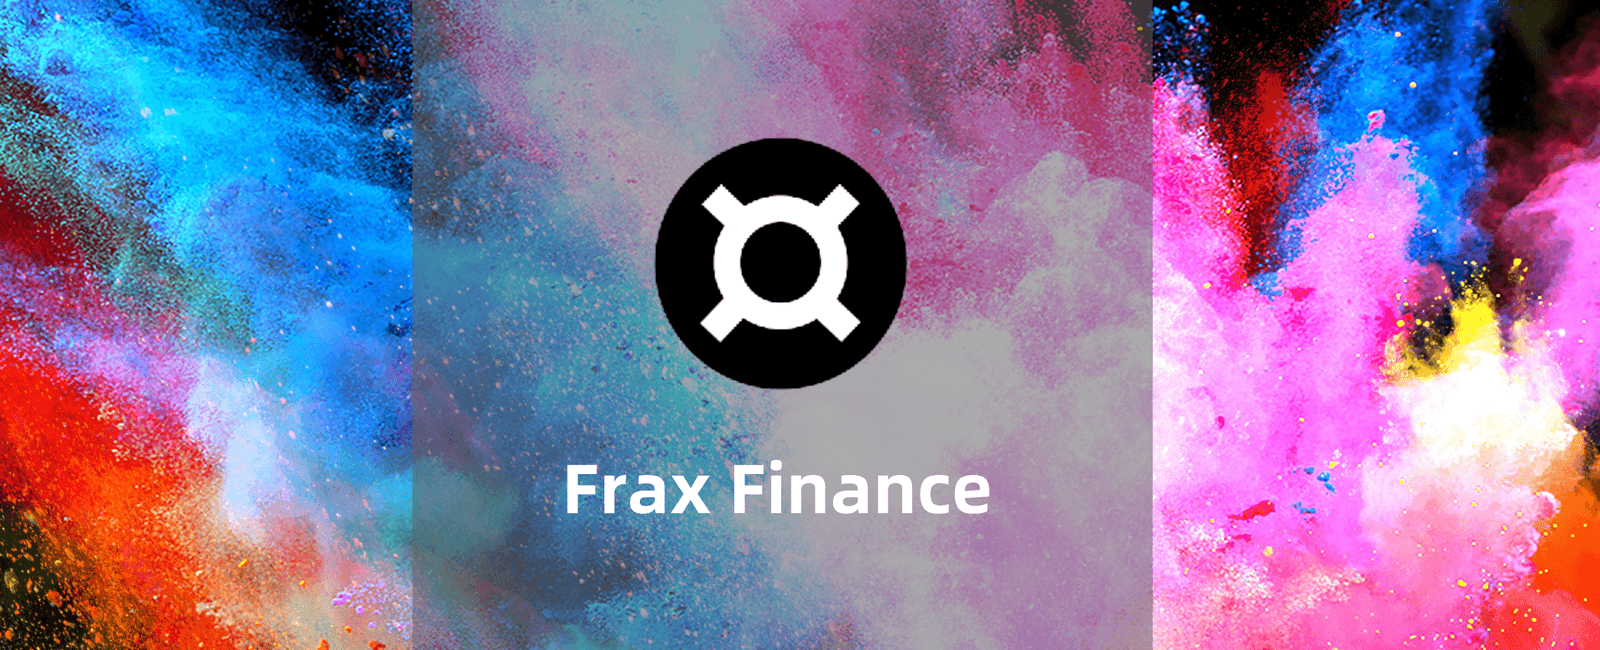 Frax Finance保姆级中文教程